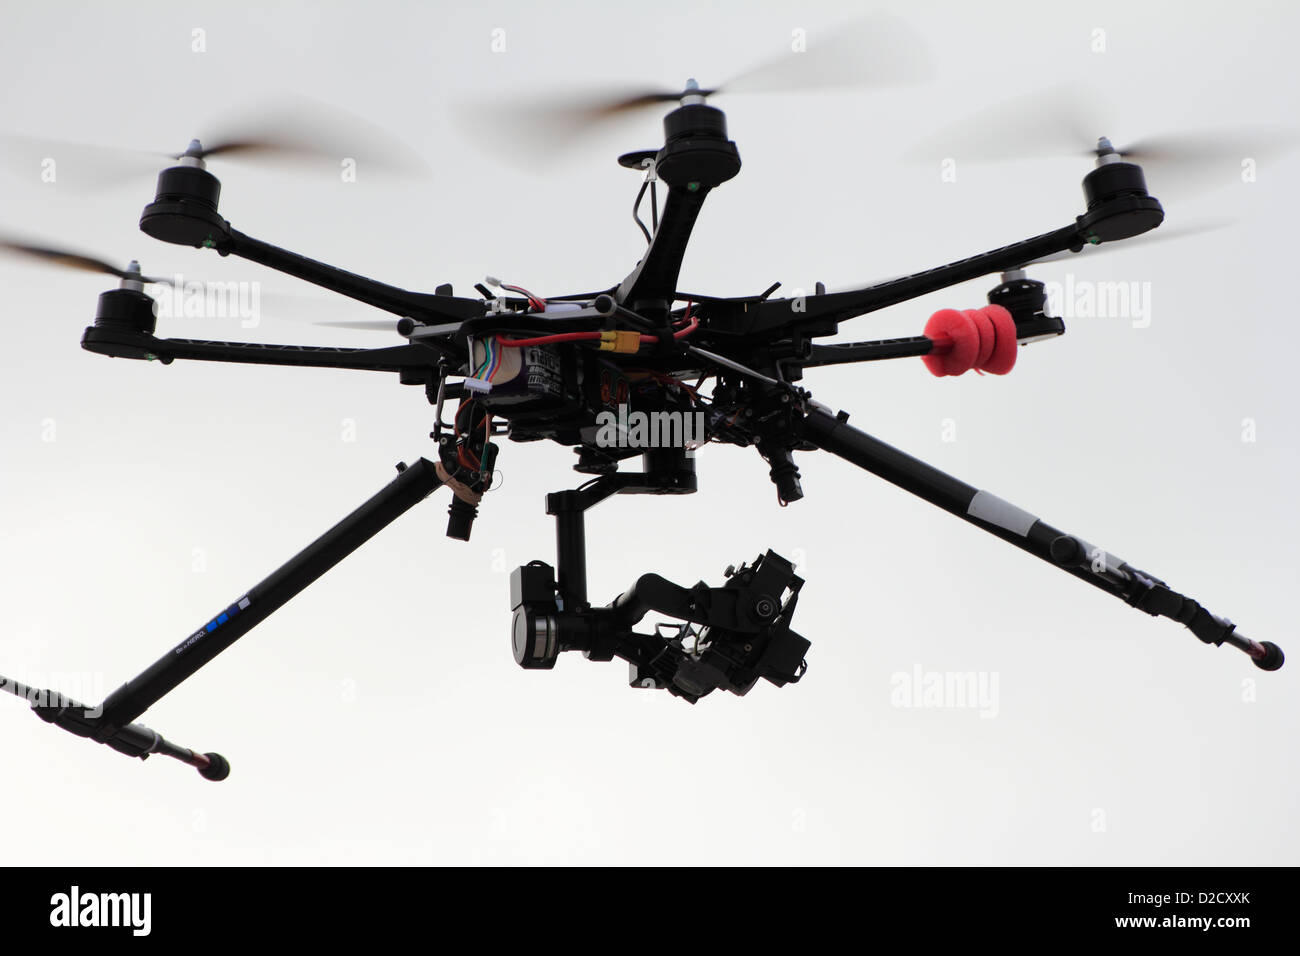 Una radio controlado octocopter o drone equipado con una cámara para tomar fotos de objetos del suelo para un proyecto de fotografía aérea Foto de stock